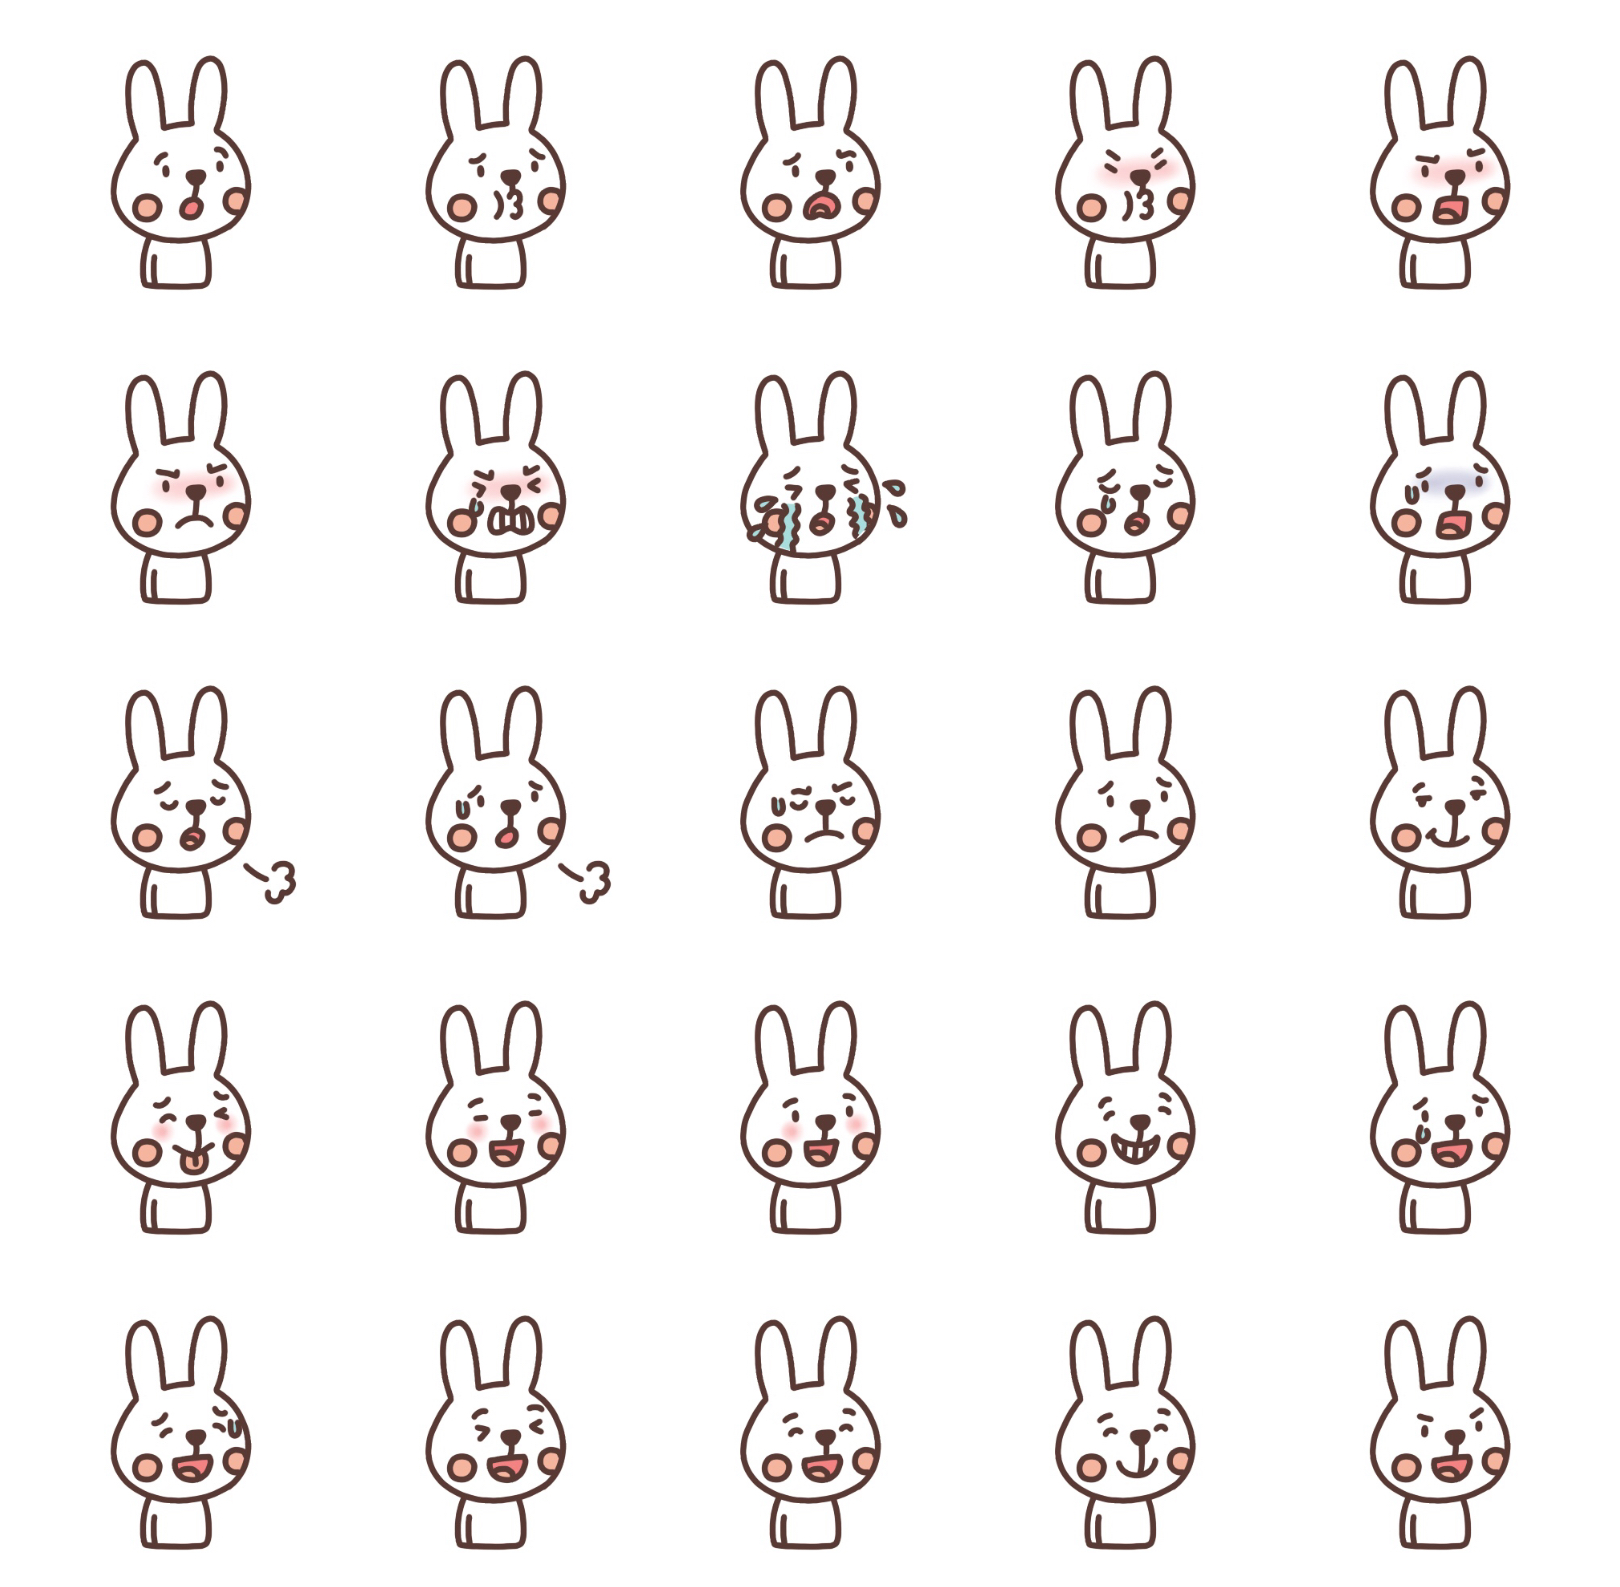 ウサギの表情イラスト一覧